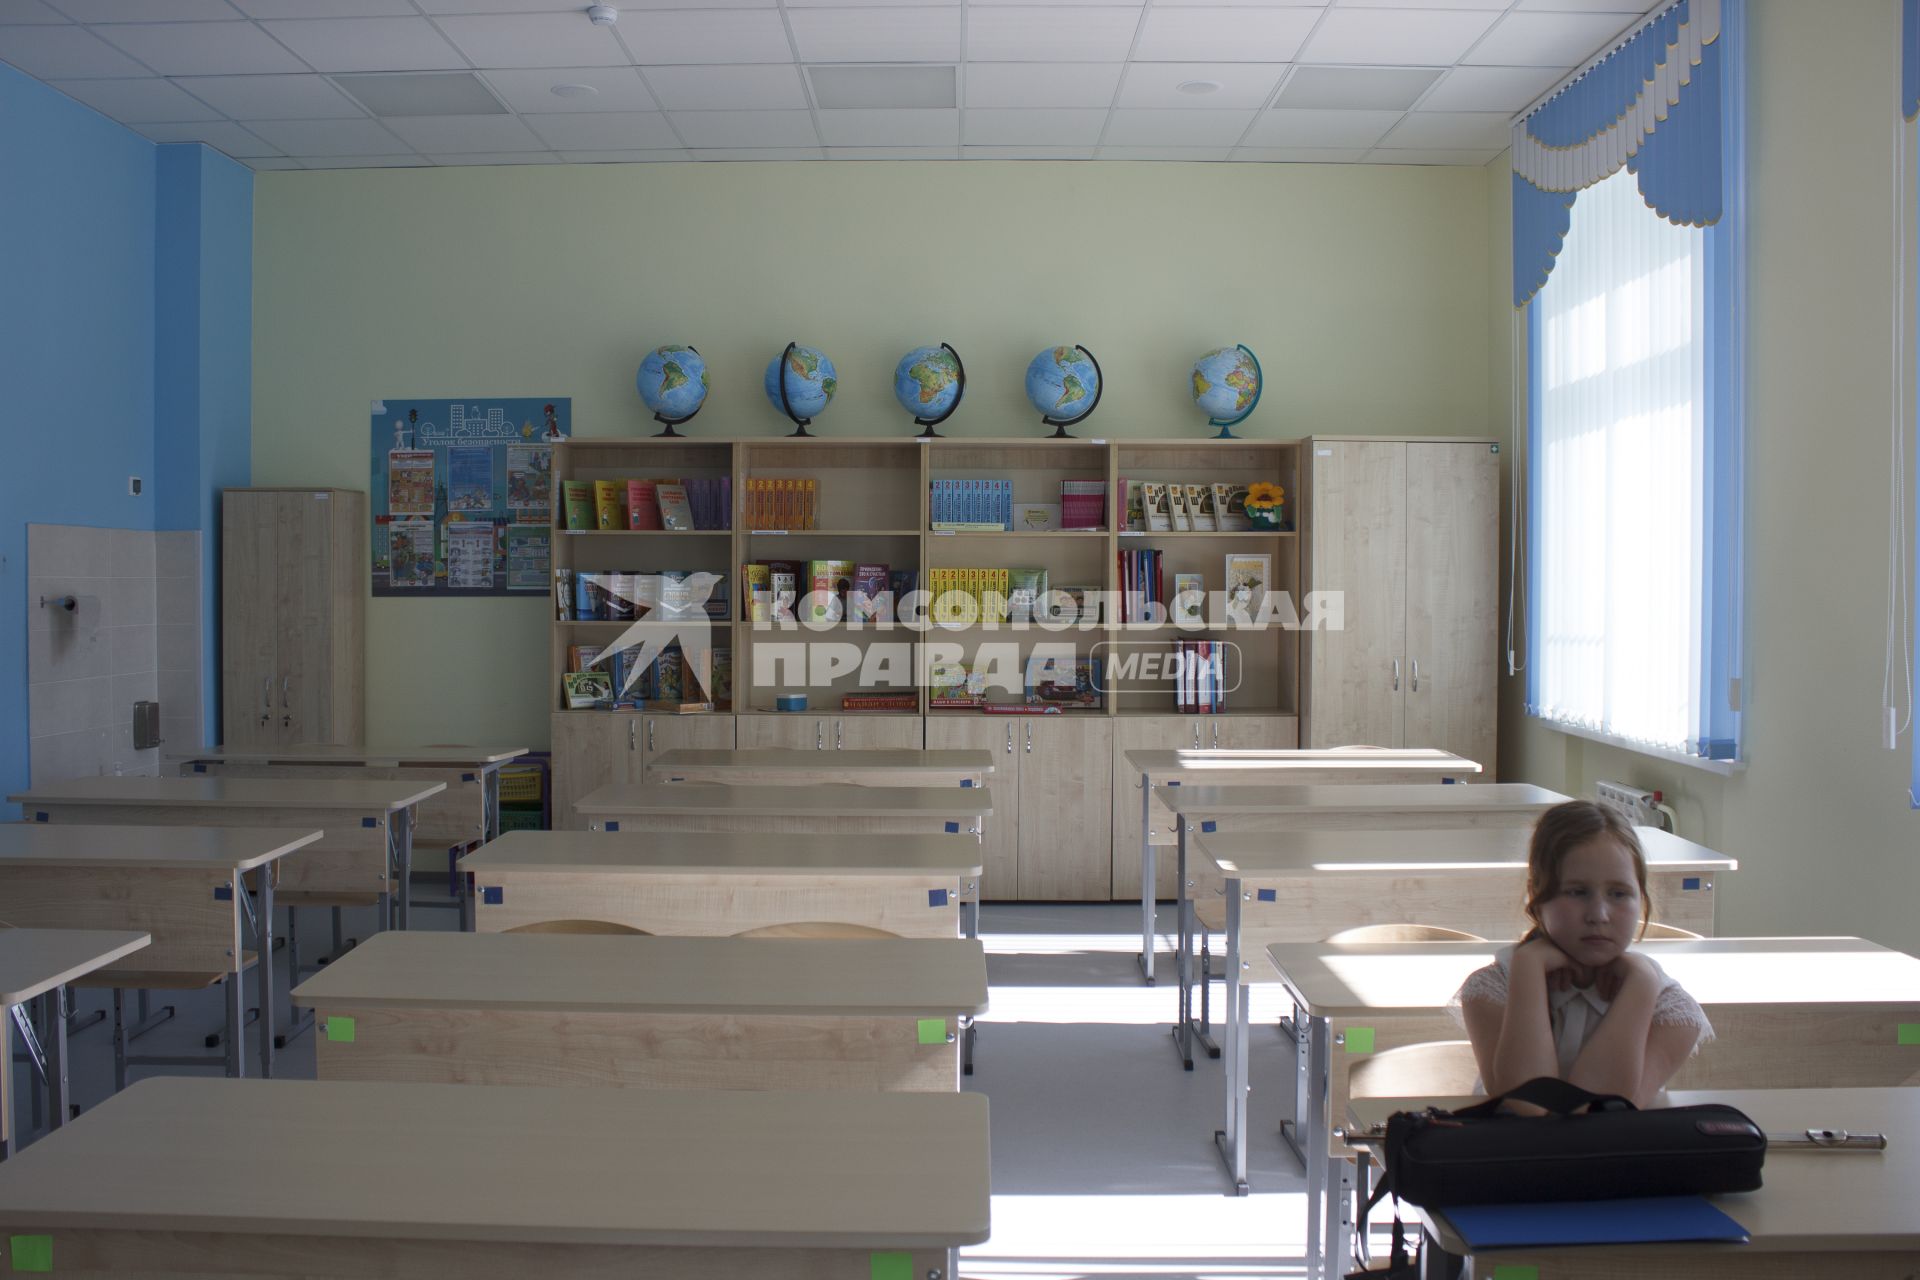 Екатеринбург. Учебный класс по географии в среднеобразовательной школе, открытой после реконструкции